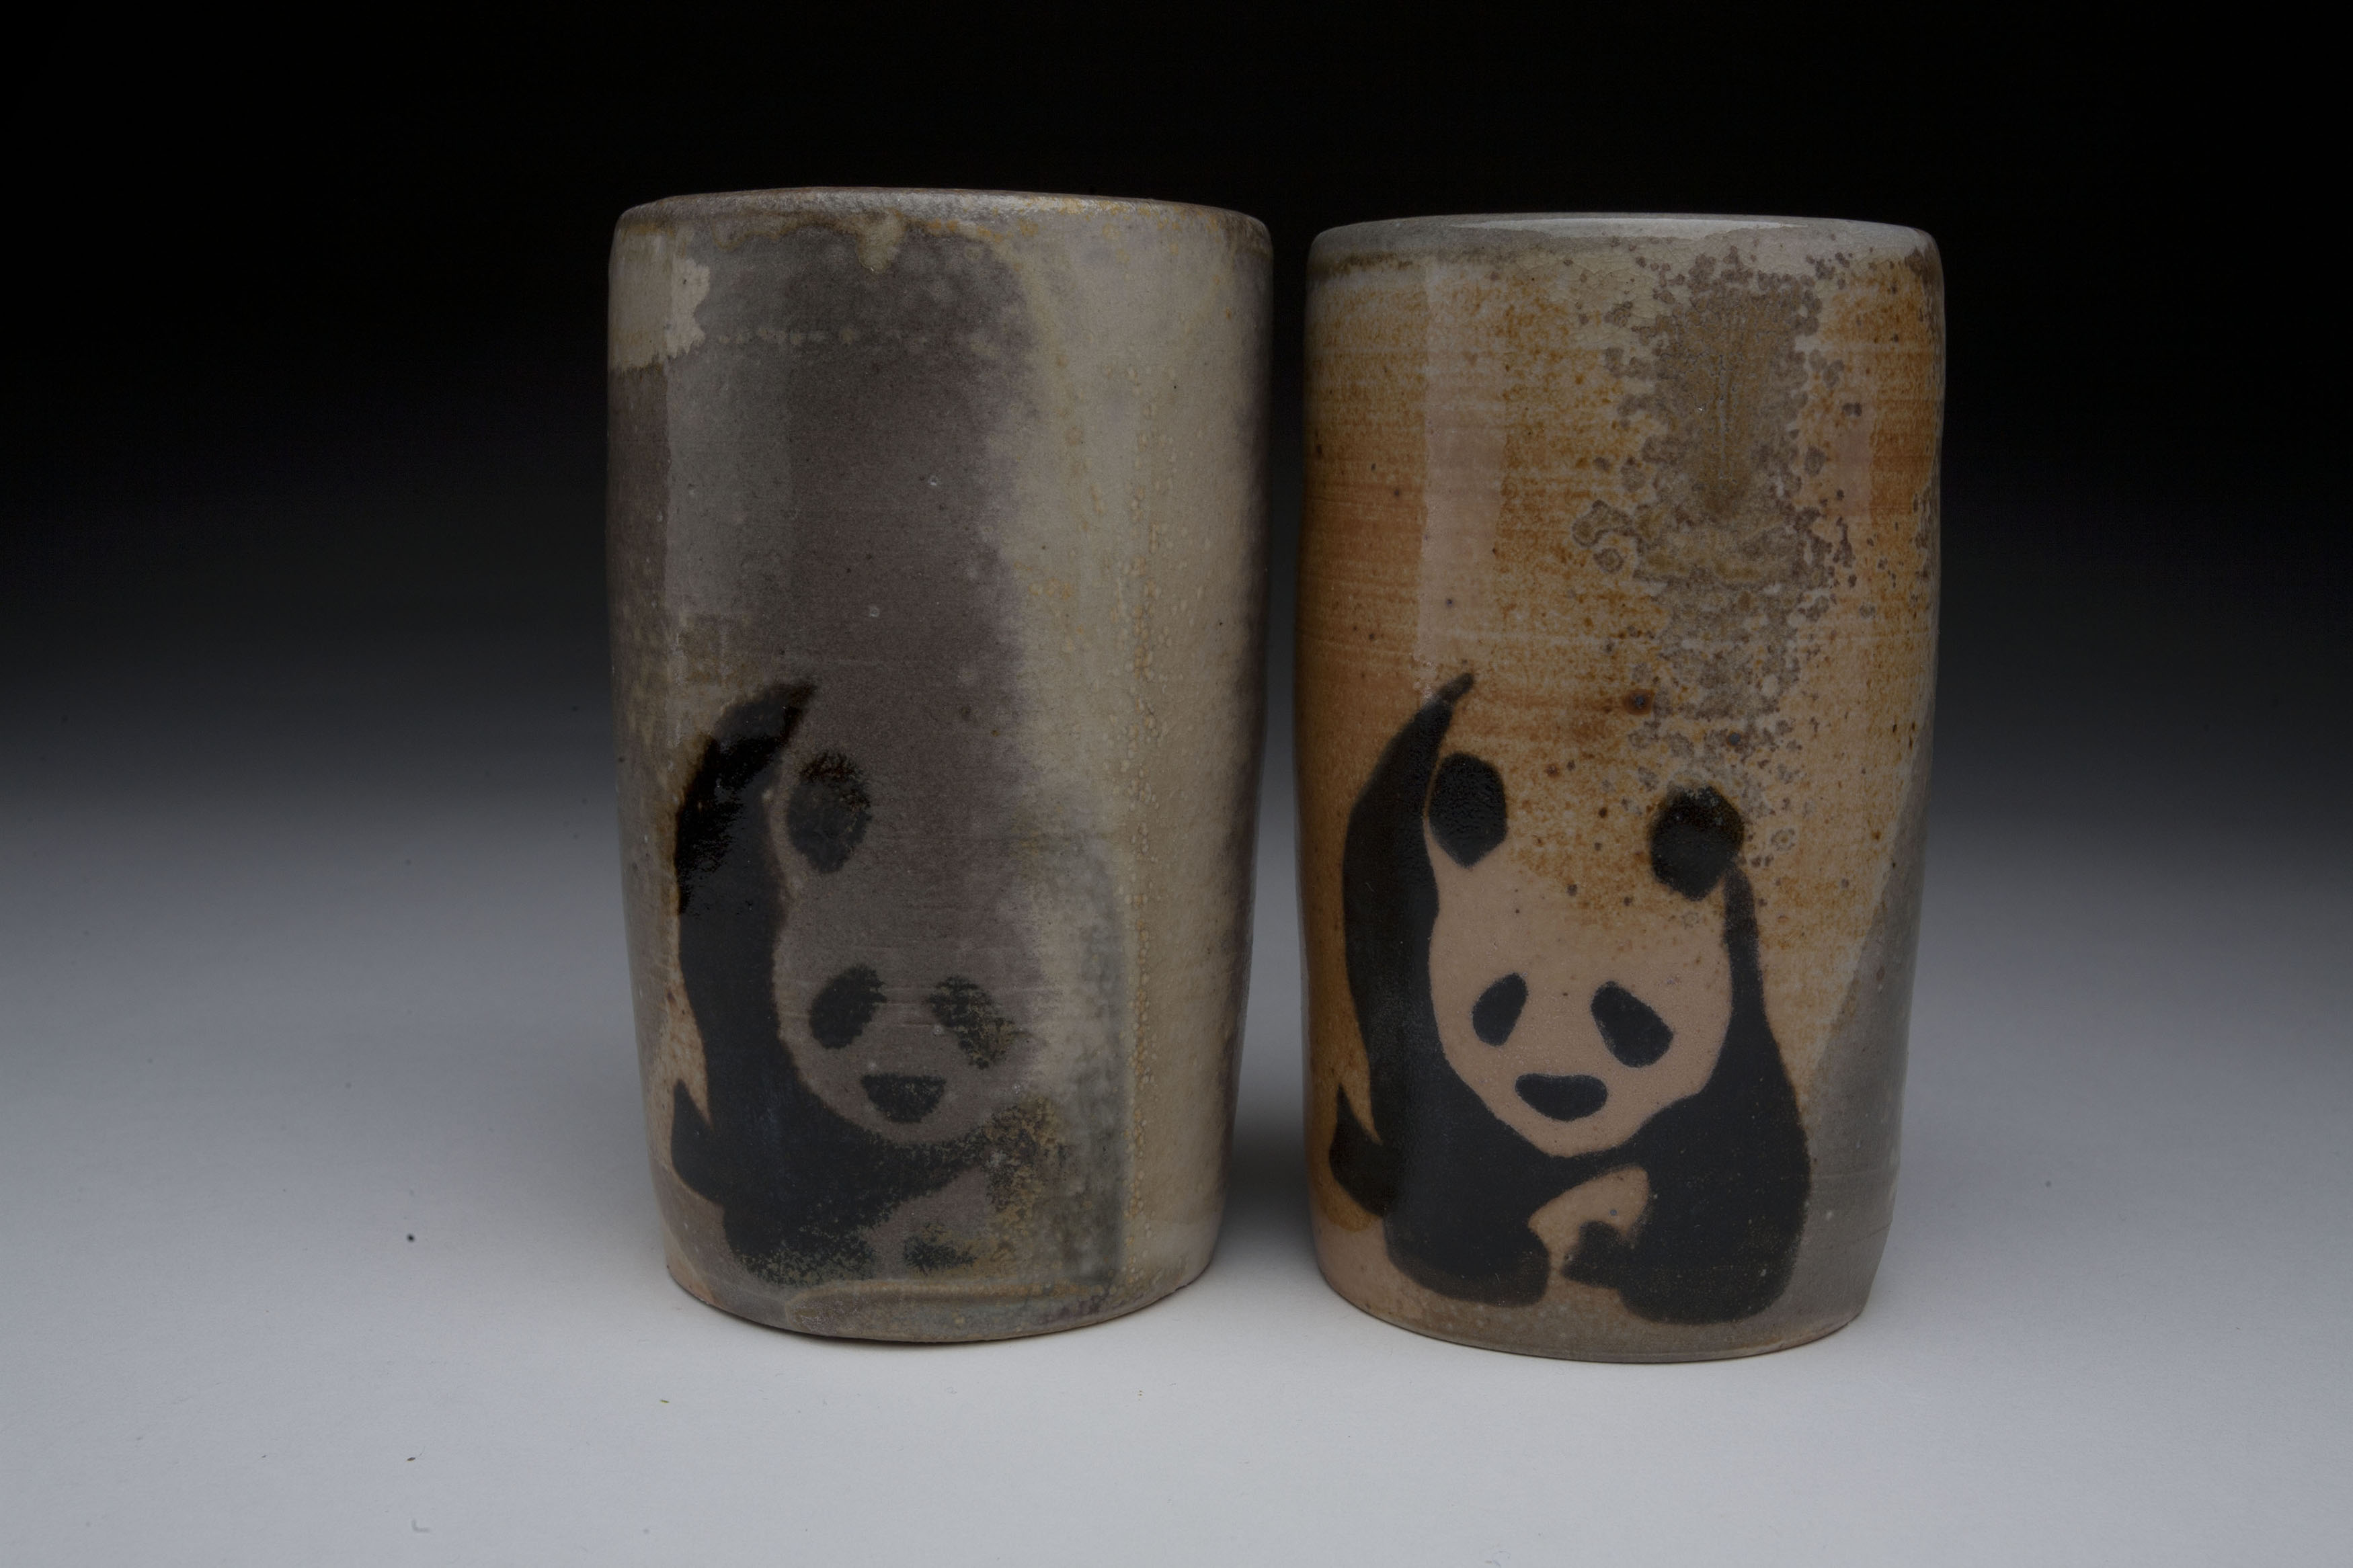 Panda cups by Nicole Roth